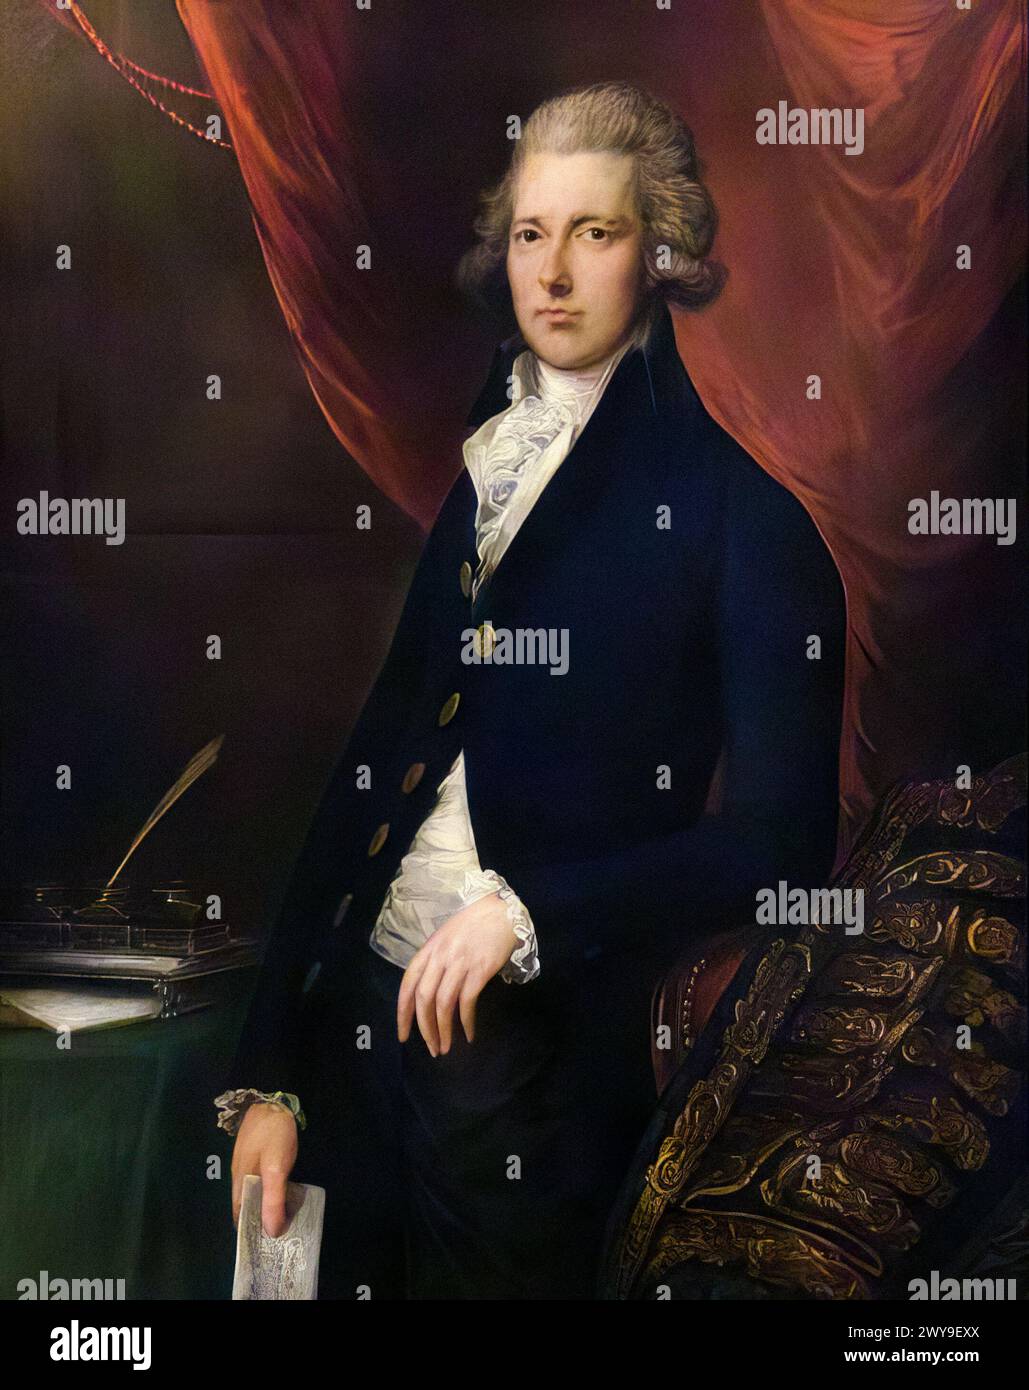 William Pitt le jeune (1759-1806), premier ministre de Grande-Bretagne 1783-1800, premier ministre du Royaume-Uni janvier-mars 1801 et 1804-1806, portrait peint à l'huile sur toile par Gainsborough Dupont et atelier, vers 1787 Banque D'Images